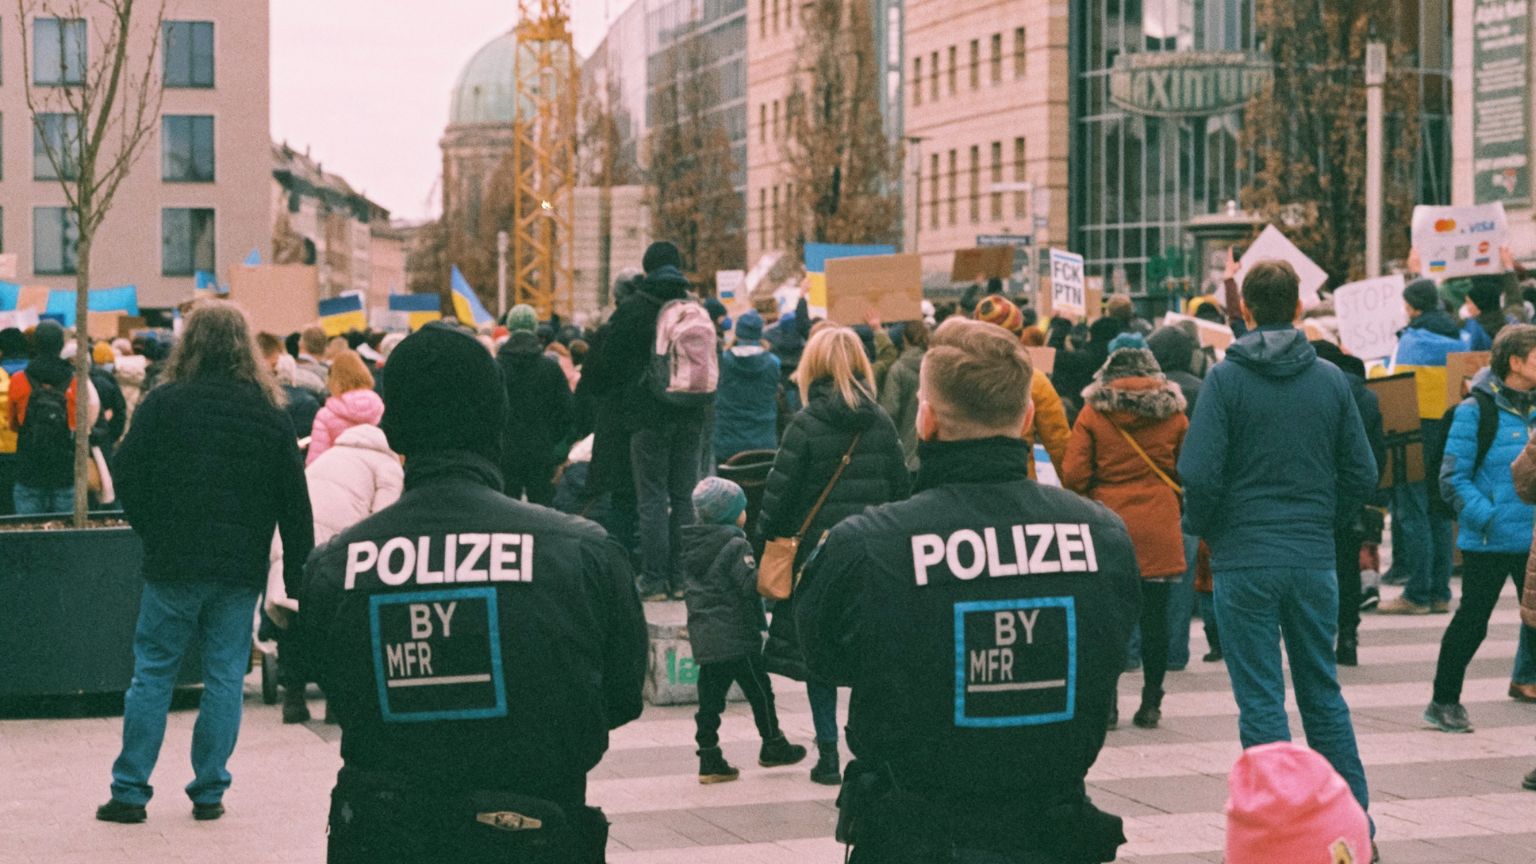 Neue Europol-Bestimmungen erweitern die polizeilichen Befugnisse, verringern den Schutz der Rechte und ermöglichen eine umfangreiche Datensammlung